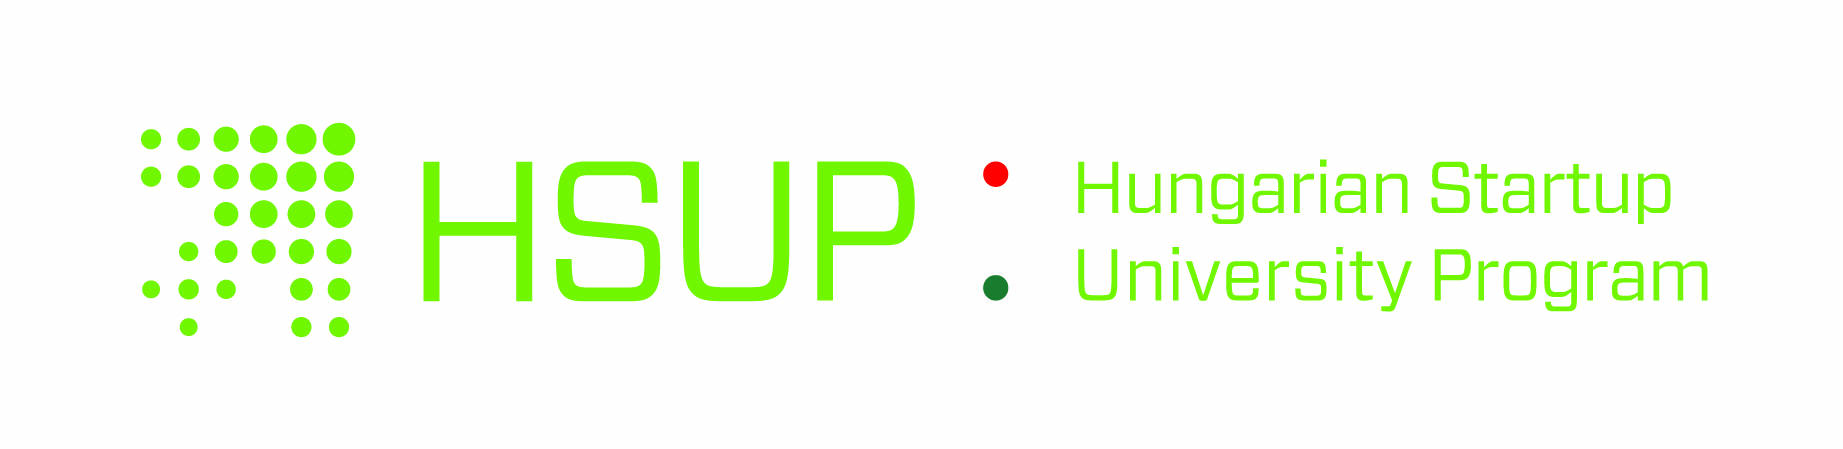 HSUP logo trikolor feher hatter